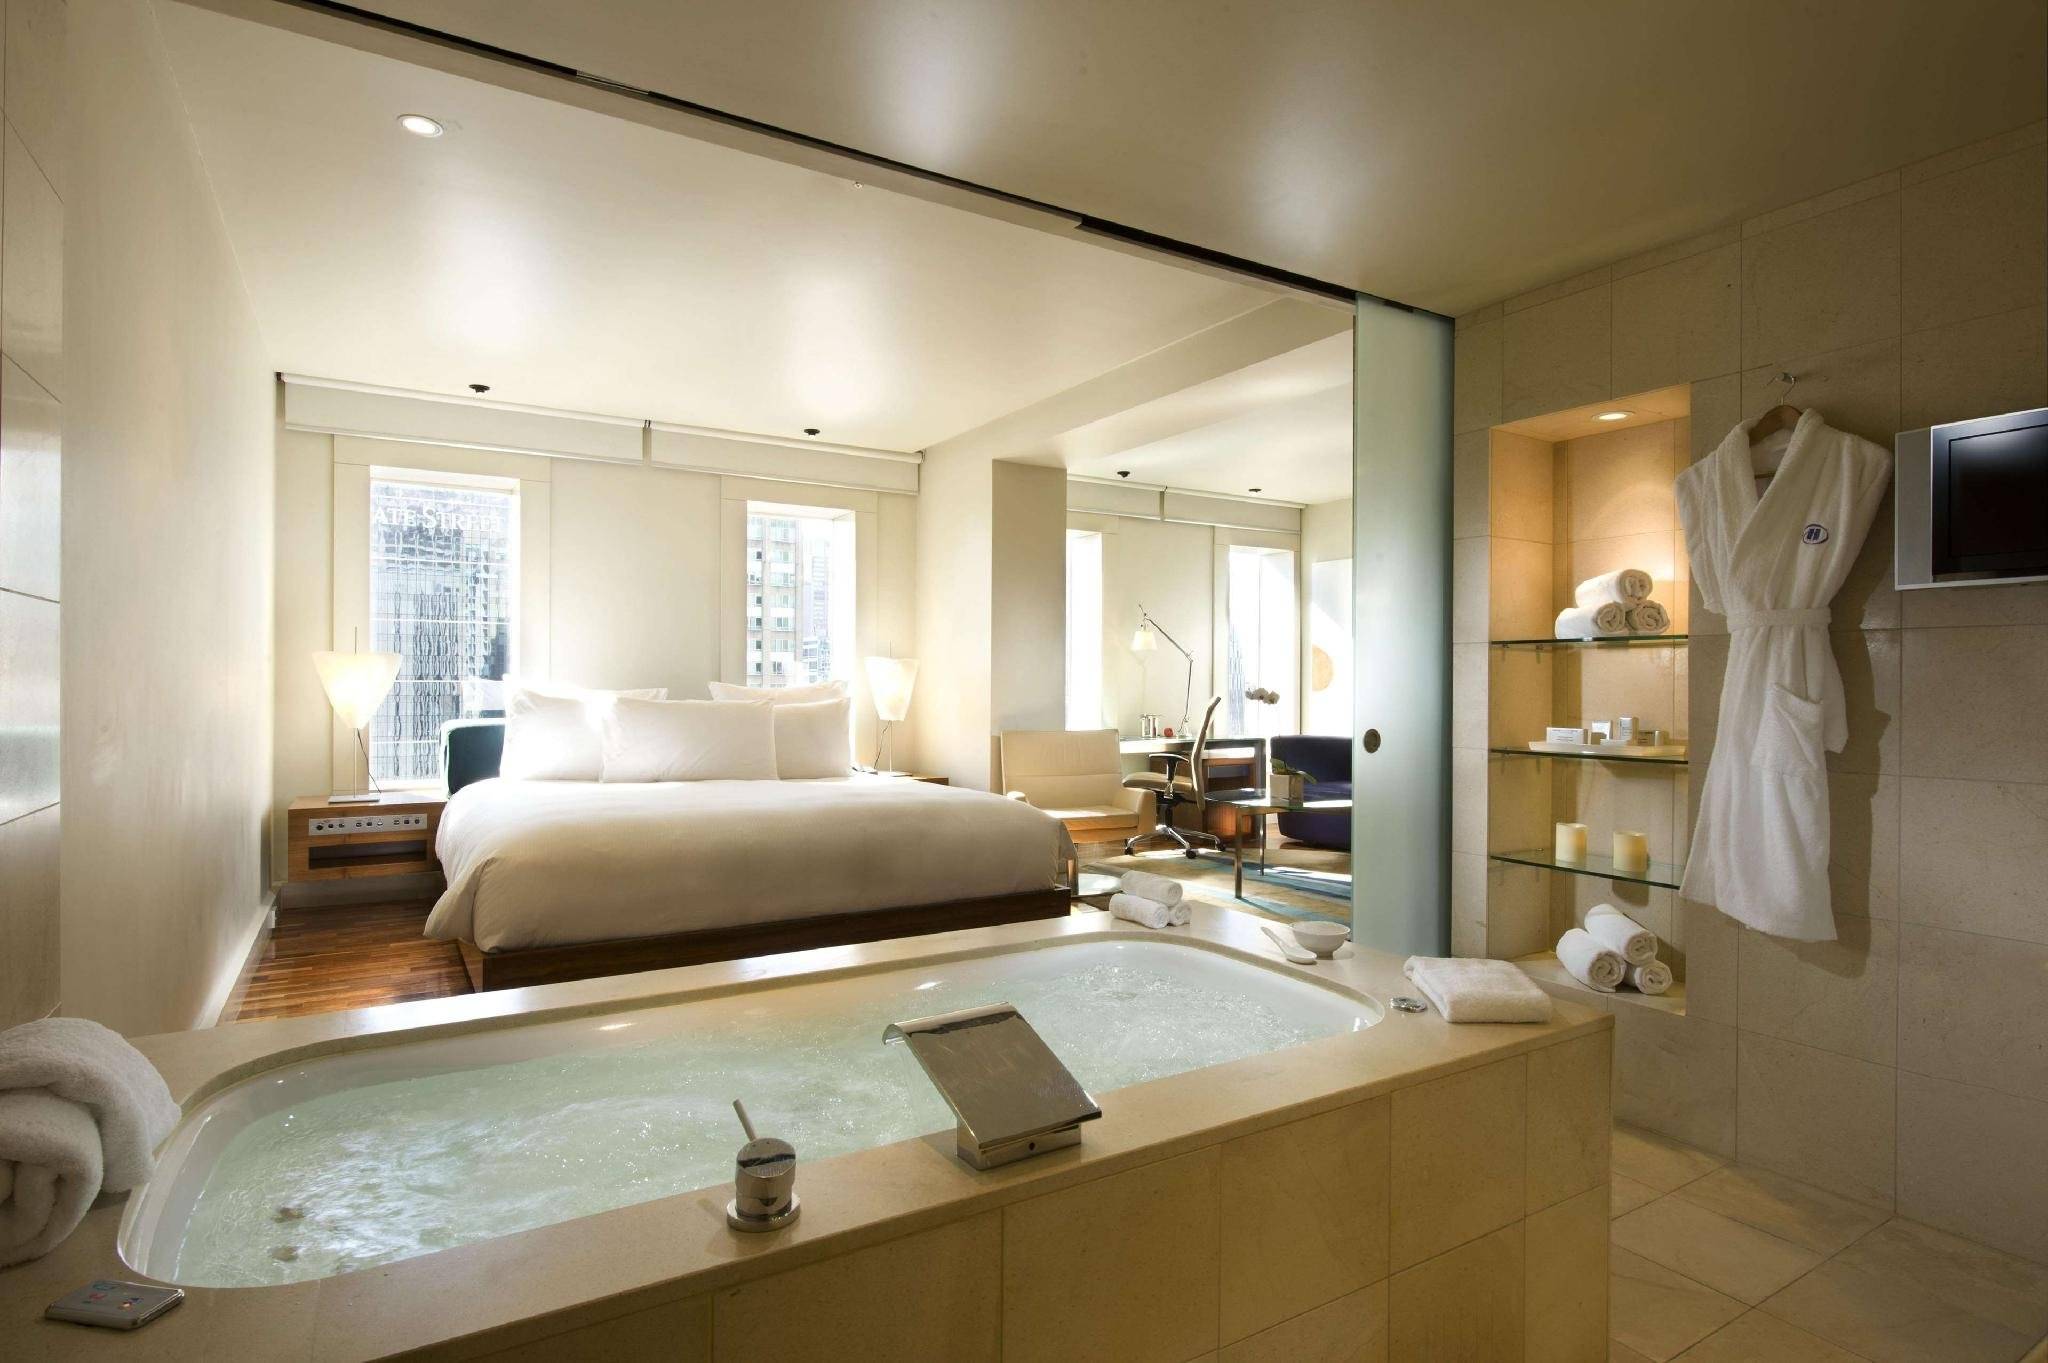 Гардеробная в спальне: ванная комната большая, дизайн и фото, санузел и зона из гипсокартона, за кроватью отдельная